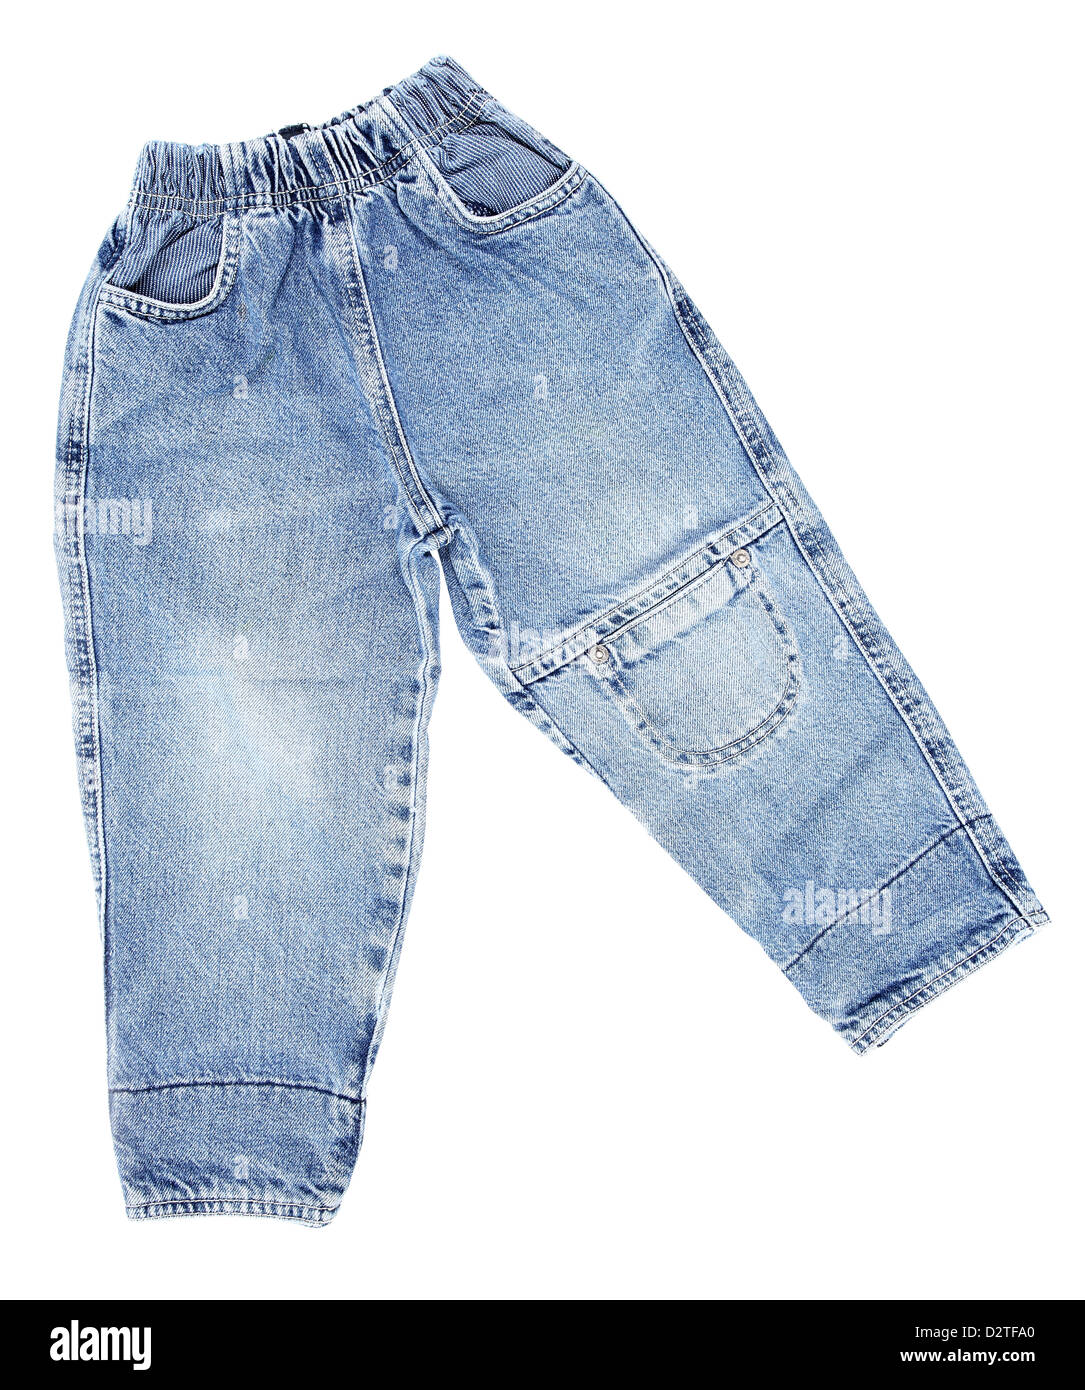 Kindermode - paar Jeans isoliert auf weißem Hintergrund Stockfoto